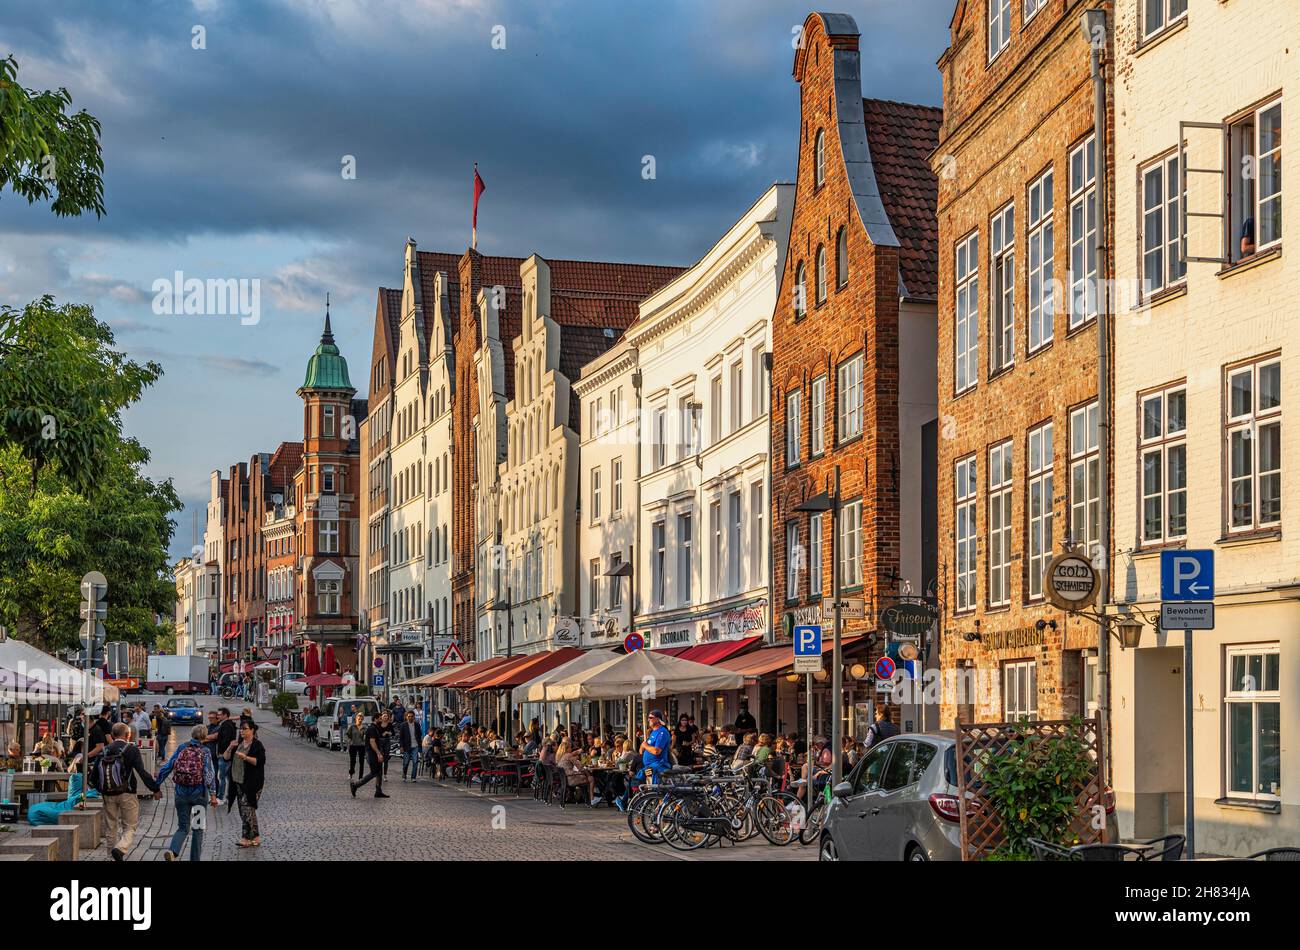 Touristen schlendern am Lübecker Ufer entlang, Häuser mit traditionellen Fassaden, die vom Licht des Sonnenuntergangs erleuchtet sind. Lübeck, Deutschland, Europa Stockfoto